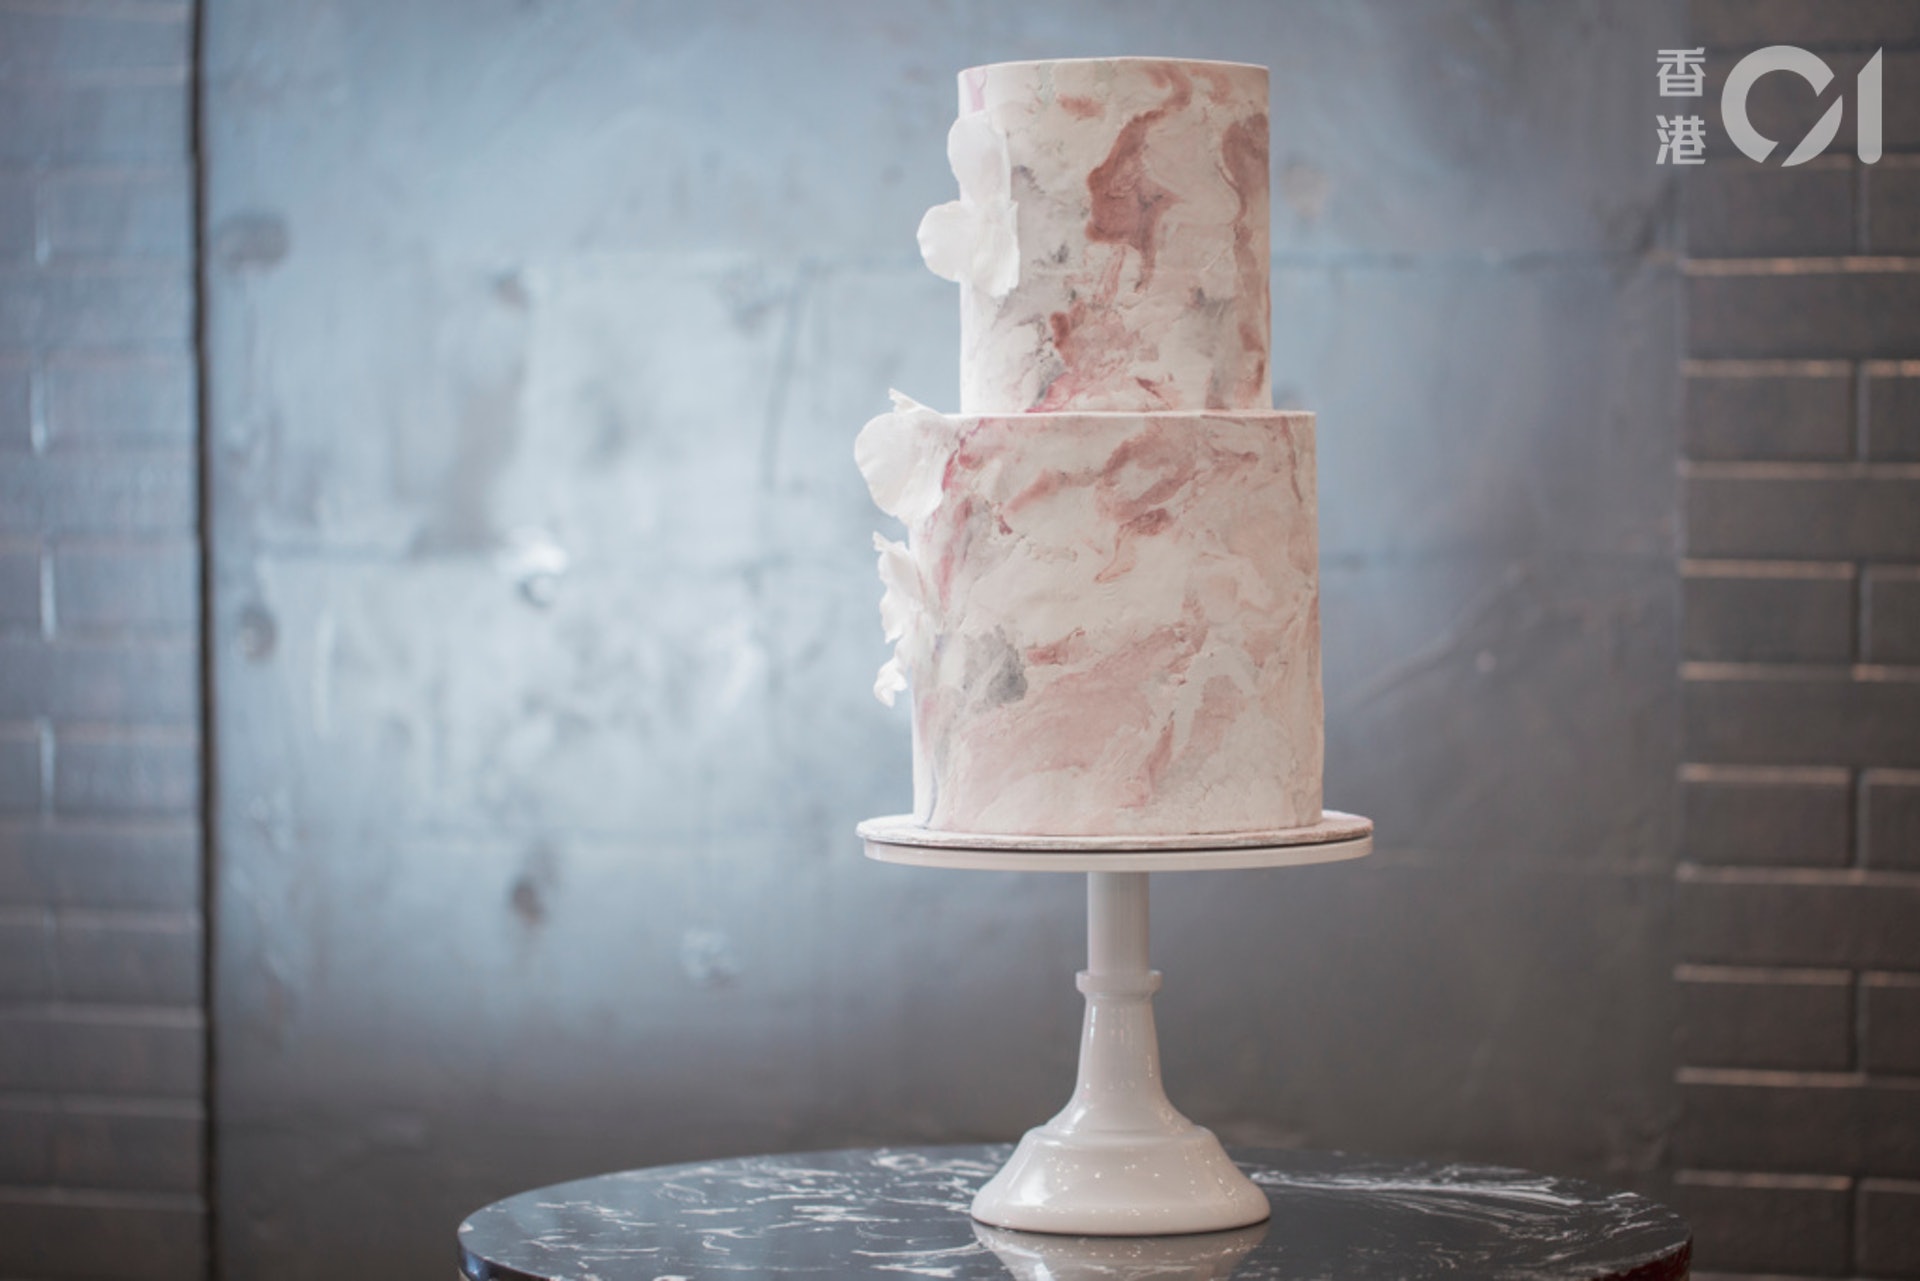 另一款與黑色一對的白色雲石蛋糕，是Manci的第二件作品，名叫《White Palace》。同樣是結婚蛋糕，今次以白雲石為概念，象徵堅不可摧。